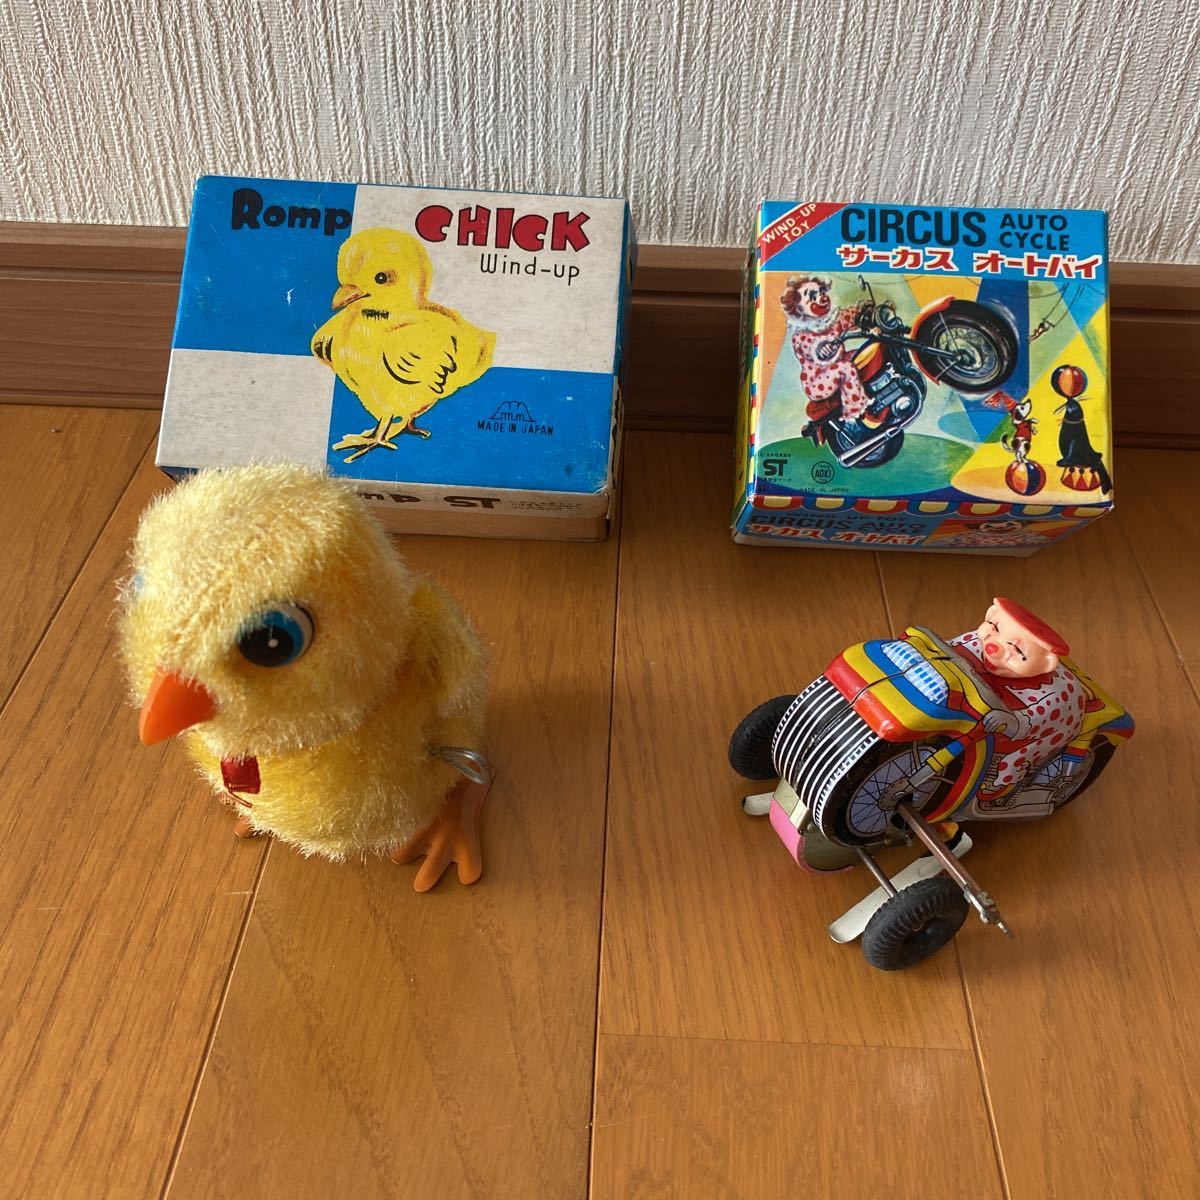 ブリキおもちゃ玩具昭和レトロ ひよこ&サーカスオートバイ当時物 2箱セット貴重_画像2